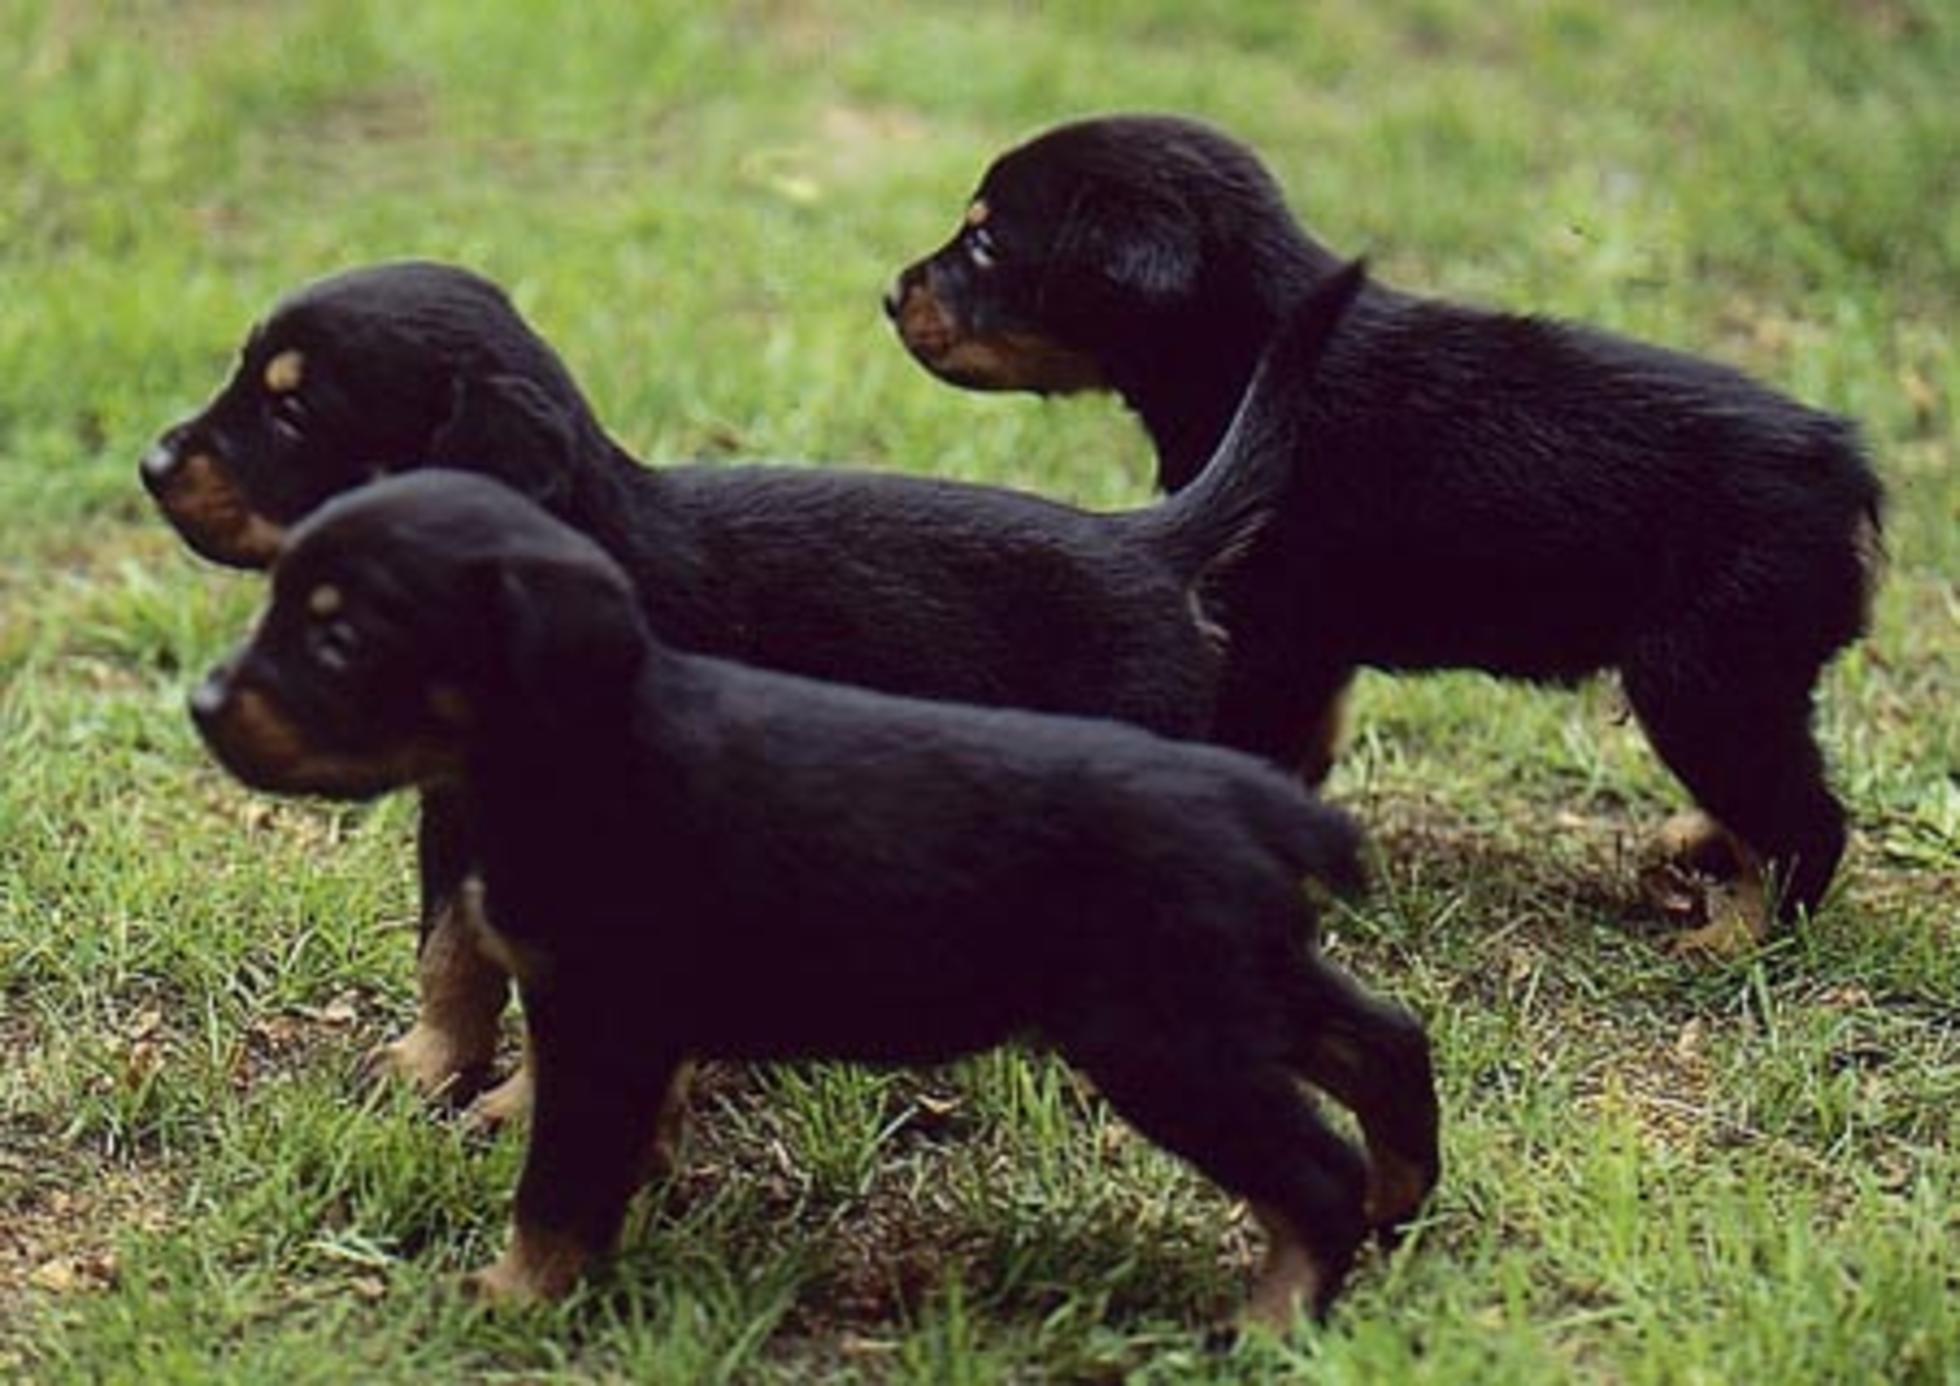 Schweizer Laufhund Puppies: Schweizer Smalandsstovare Puppies Breed